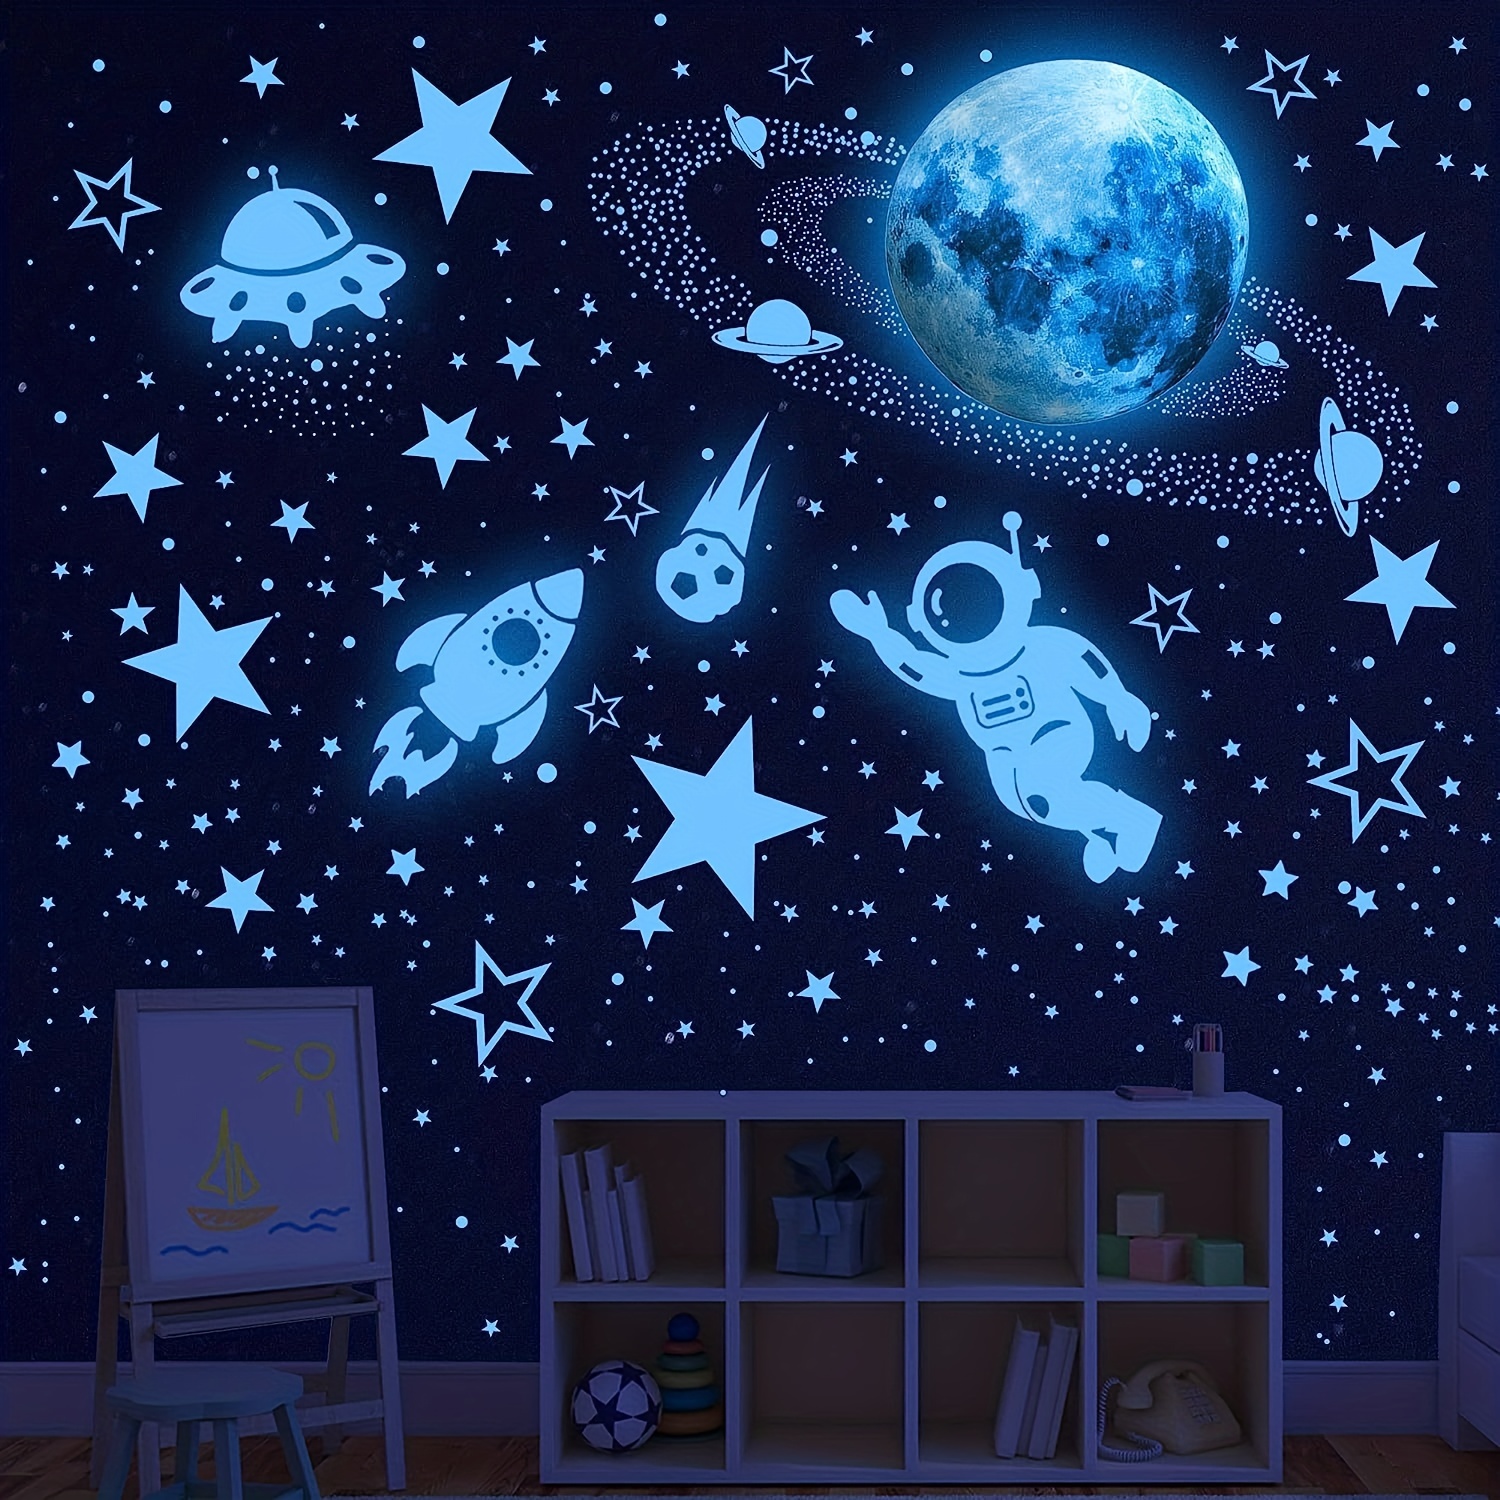 1498pcs Pegatinas De Estrellas Luminosas: ¡Transforma Tu Dormitorio En Un  Planeta Del Espacio Exterior!